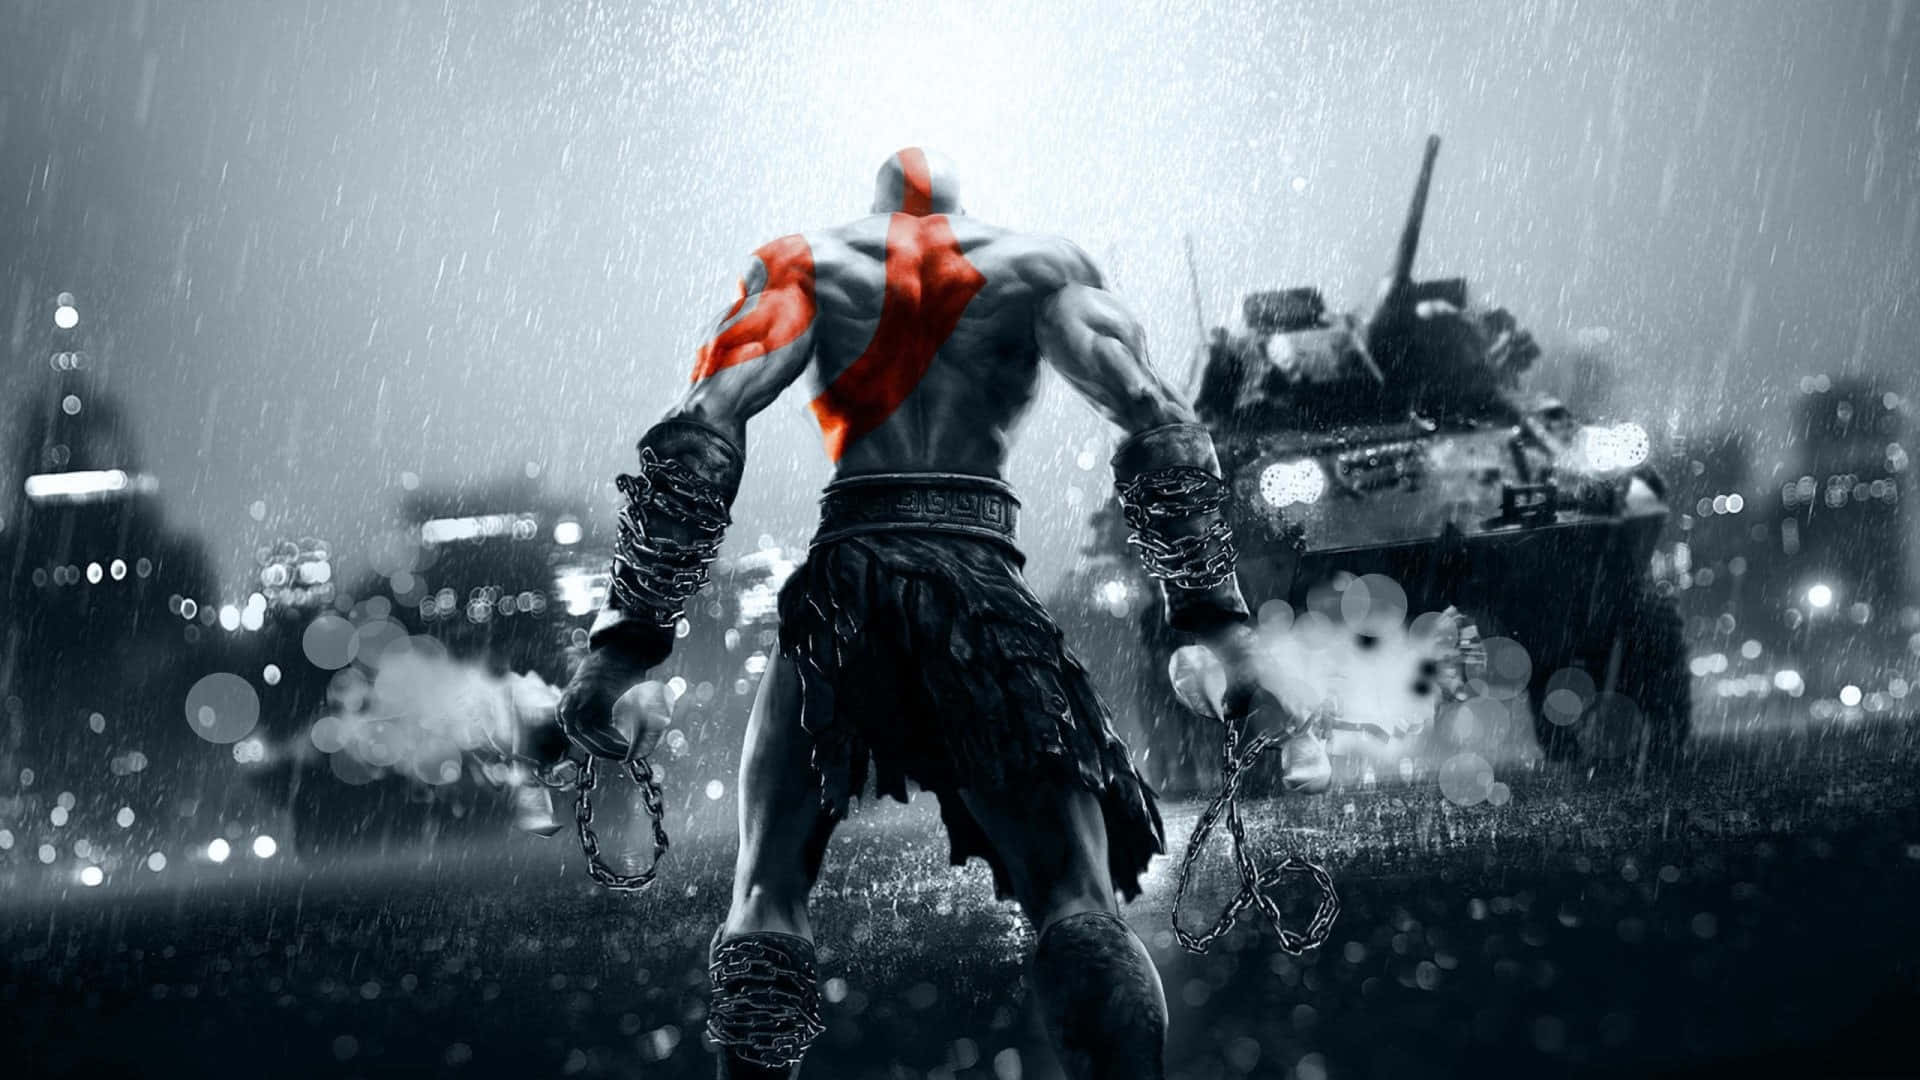 Kratosy Atreus En Una Emocionante Escena De Acción De God Of War.